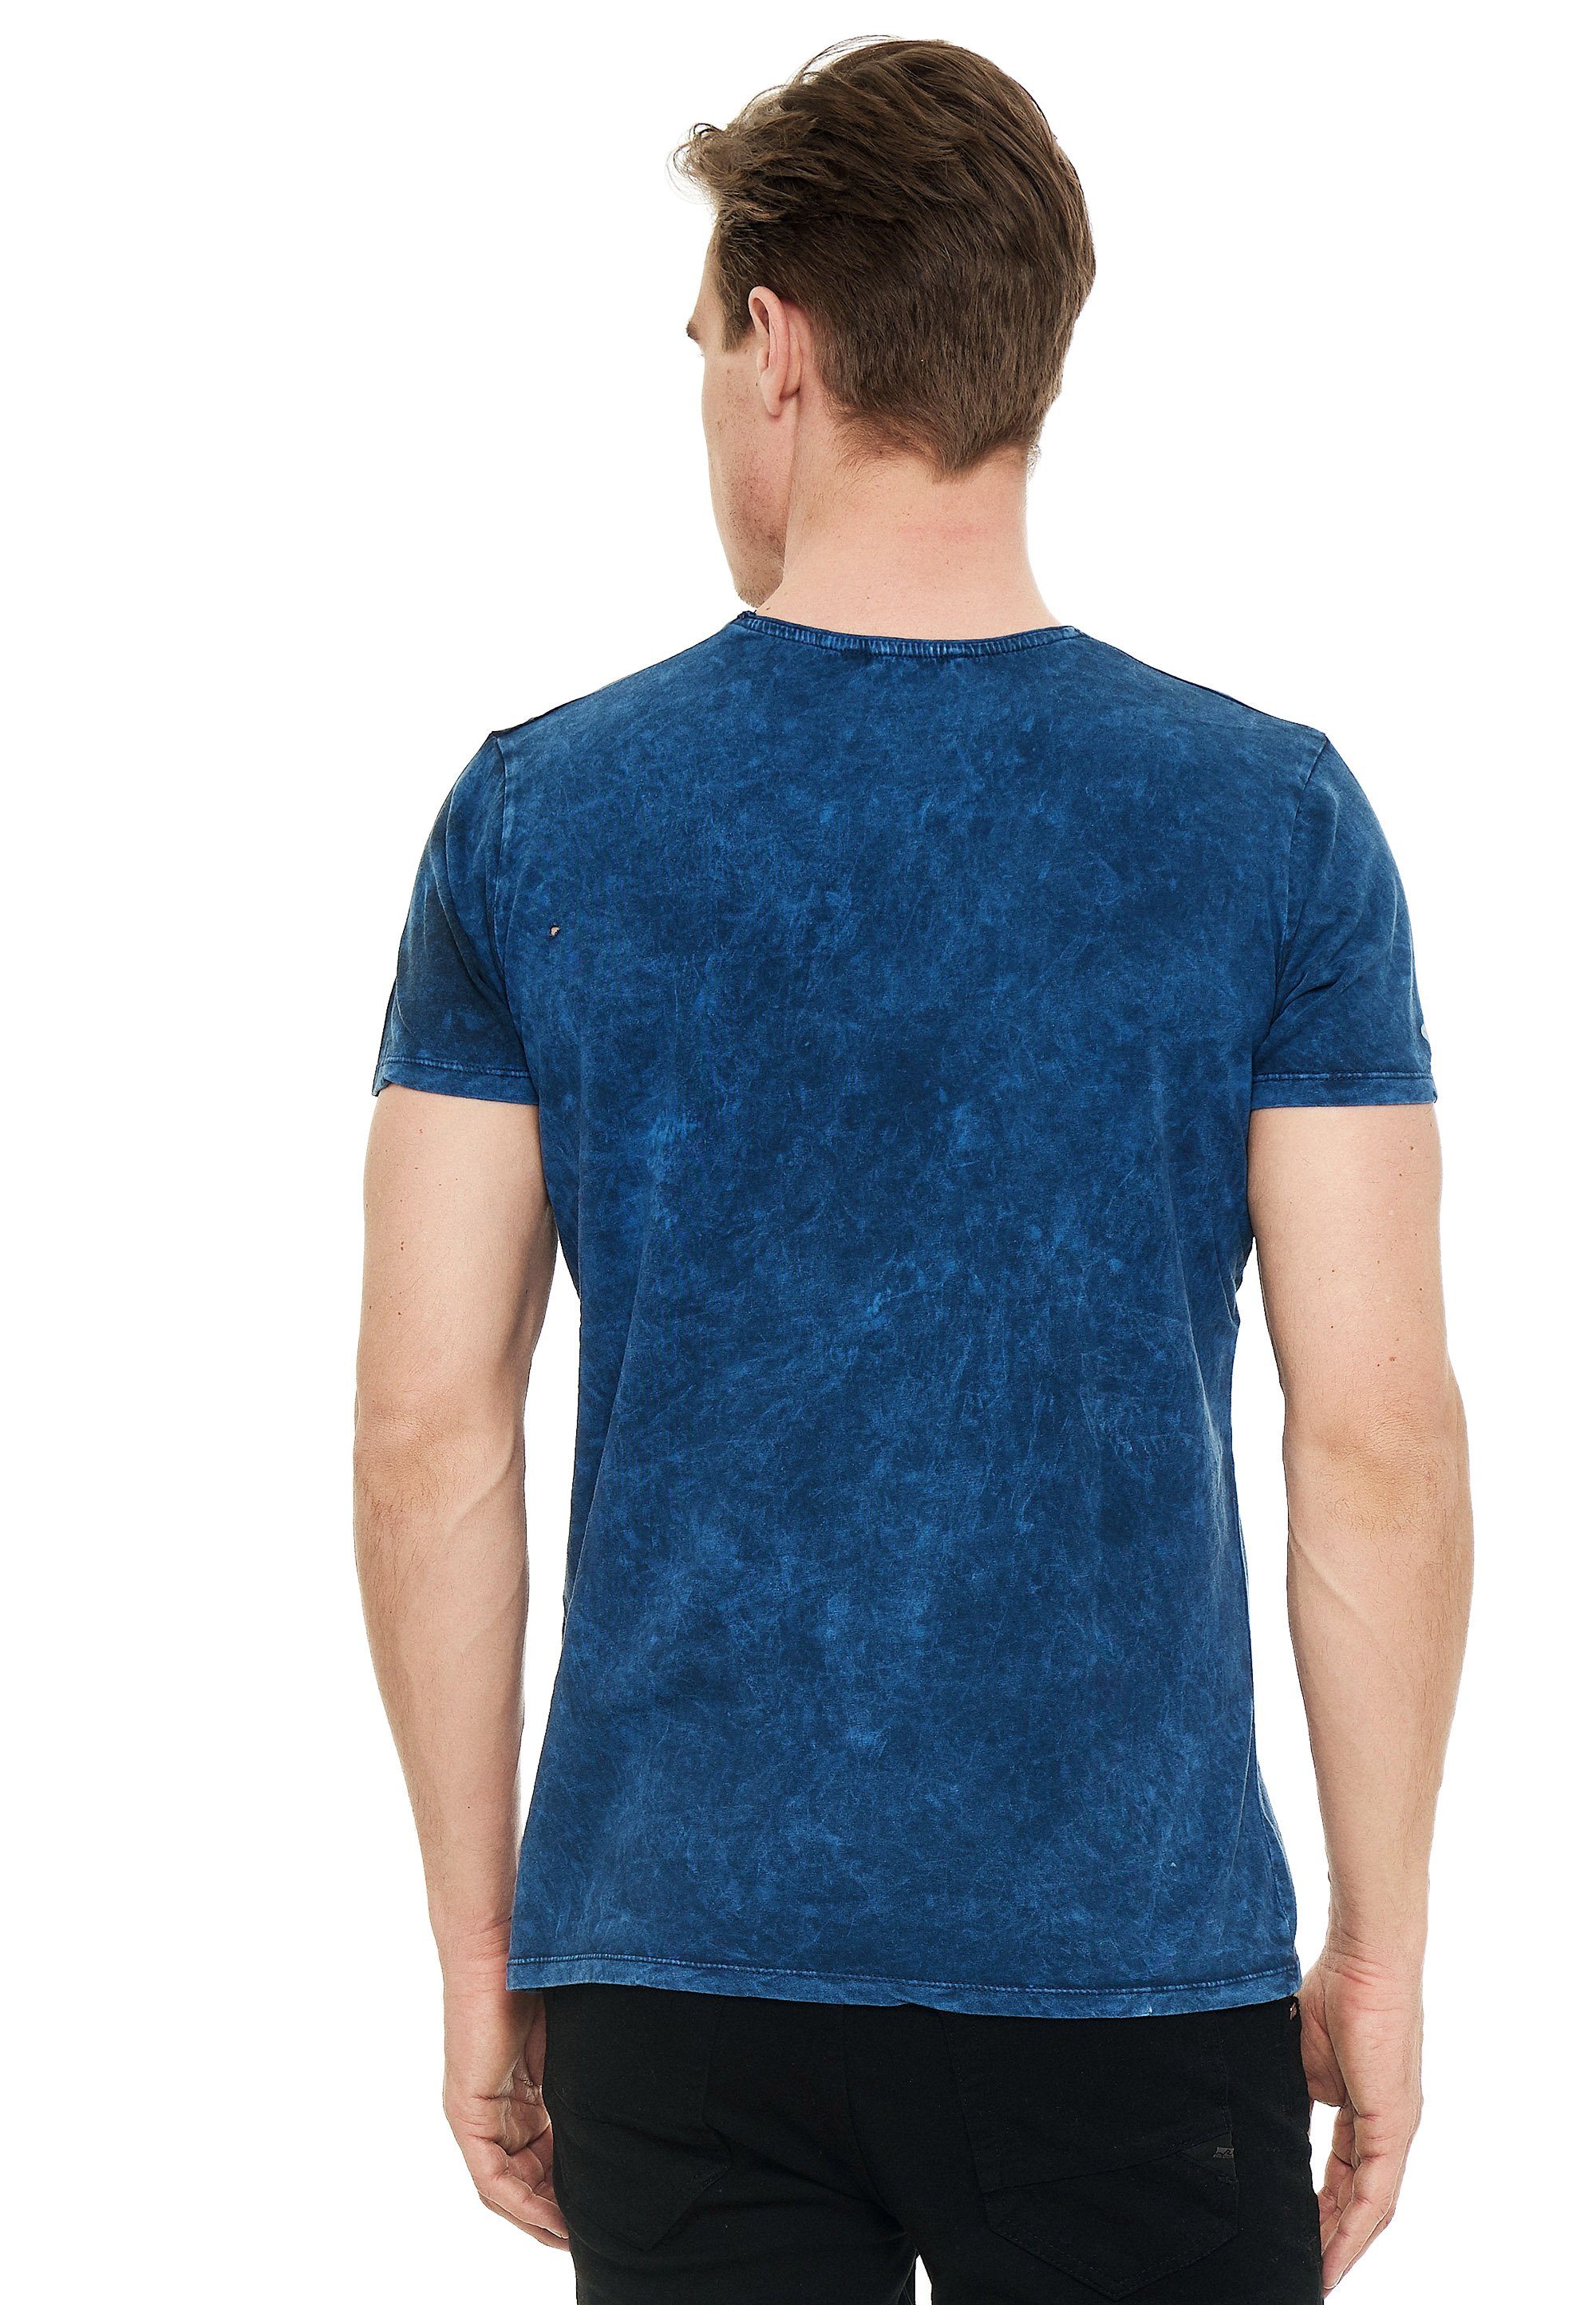 mit blau Rusty Print eindrucksvollem T-Shirt Neal